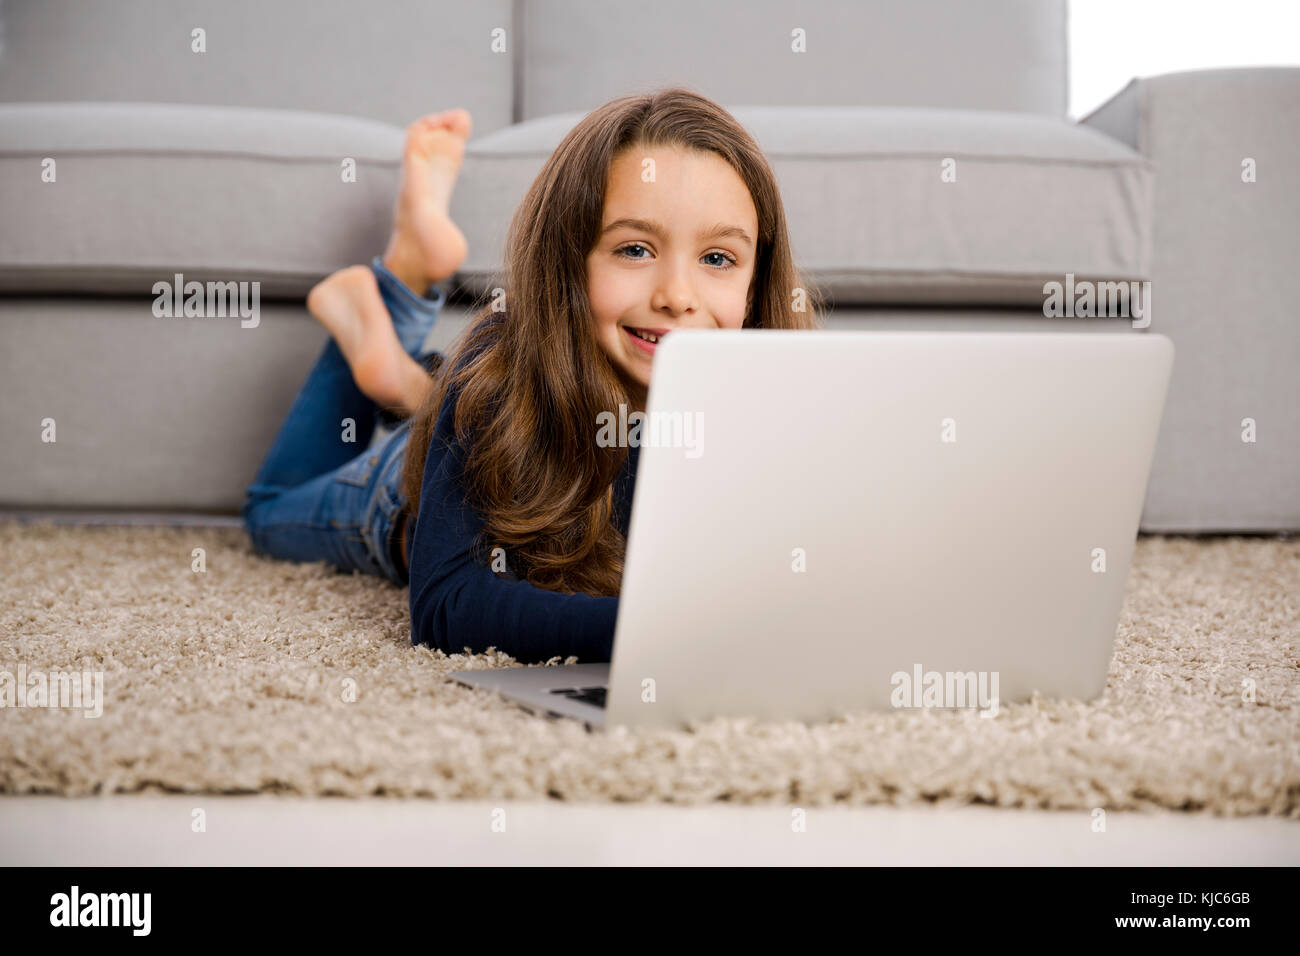 Fröhliches kleines Mädchen zu Hause arbeiten mit einem laptop Stockfoto